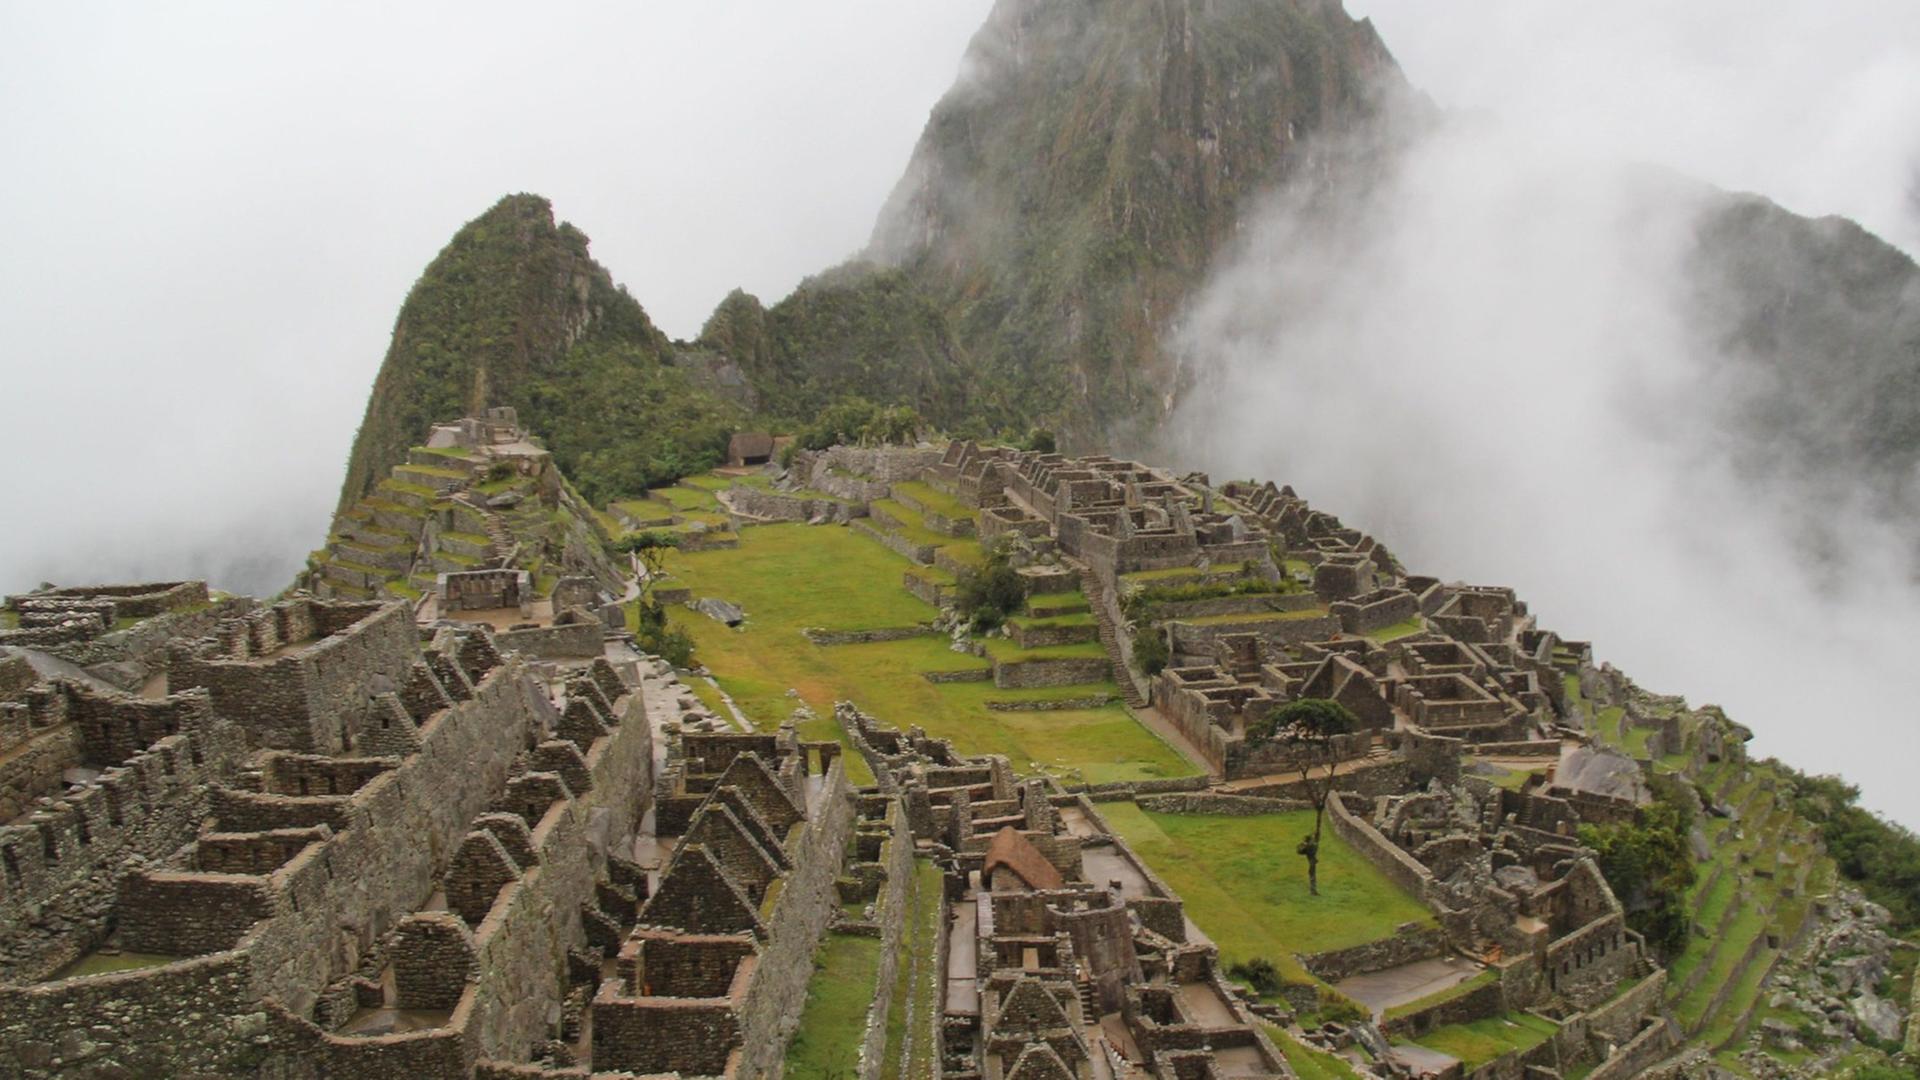 Die Ruinenstadt Machu Picchu in Peru von einem erhöhten Standpunkt aus fotografiert.